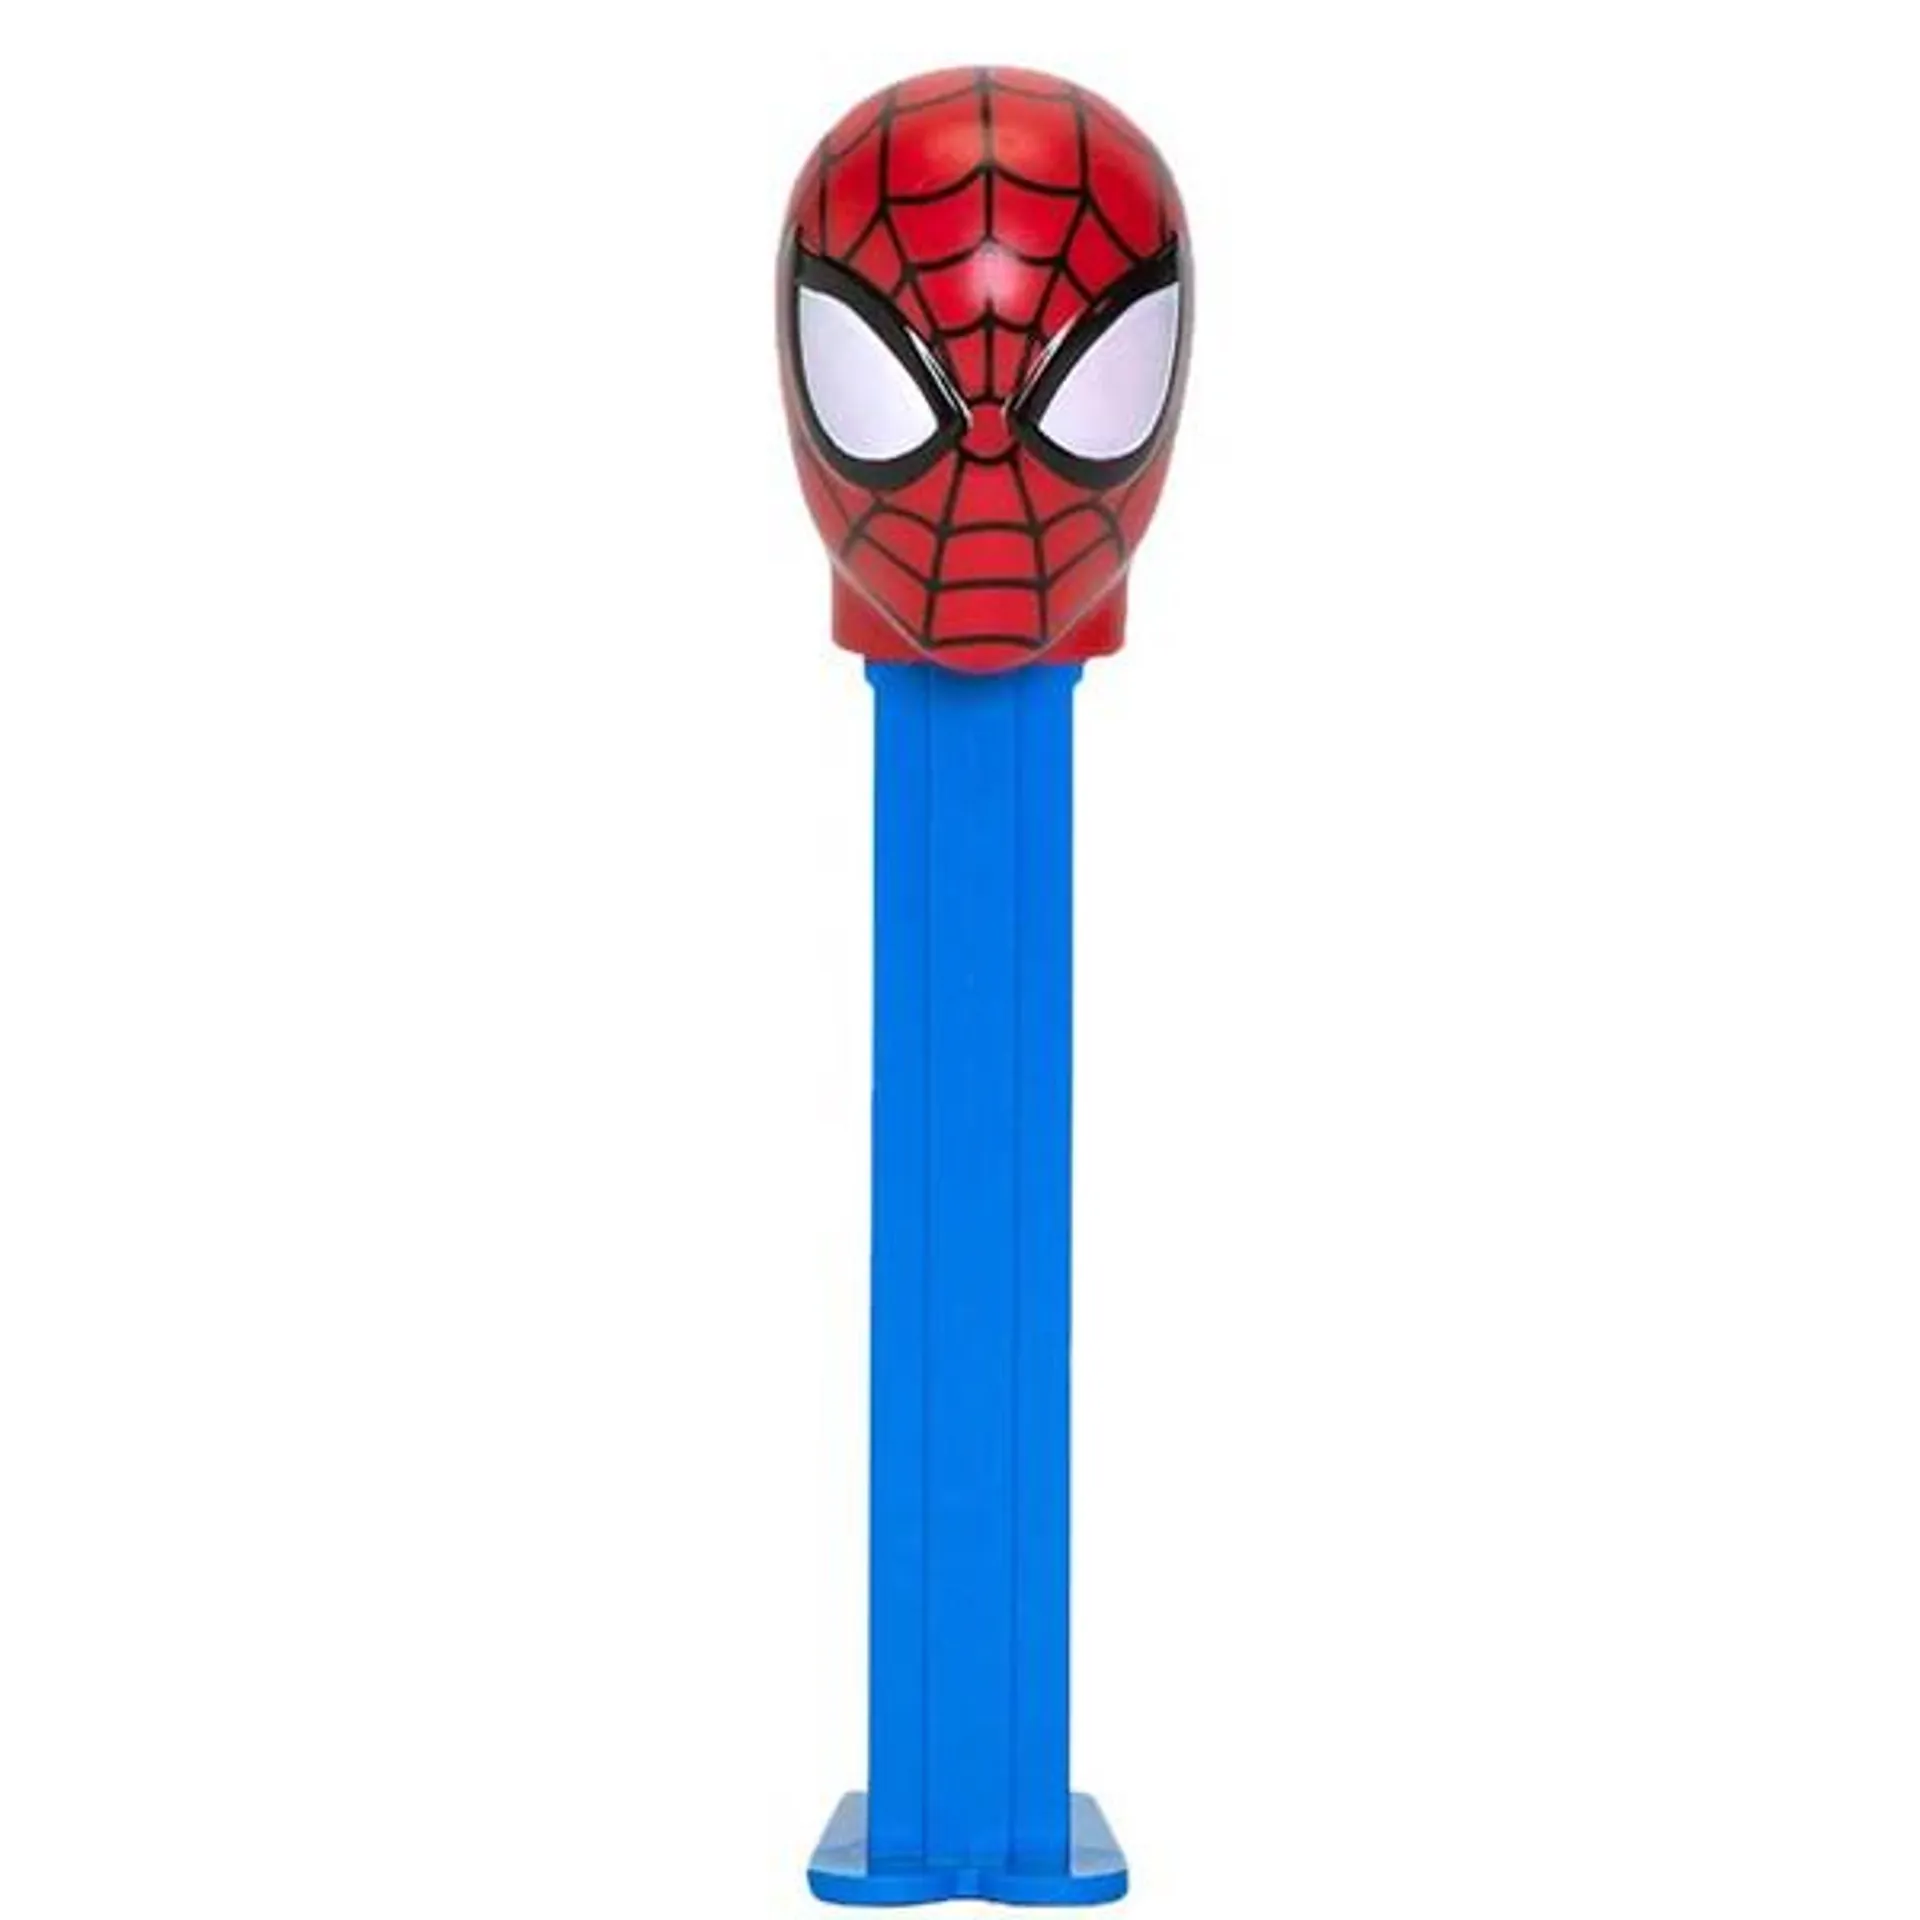 Marvel - Spider-Man Pez Candy Dispenser